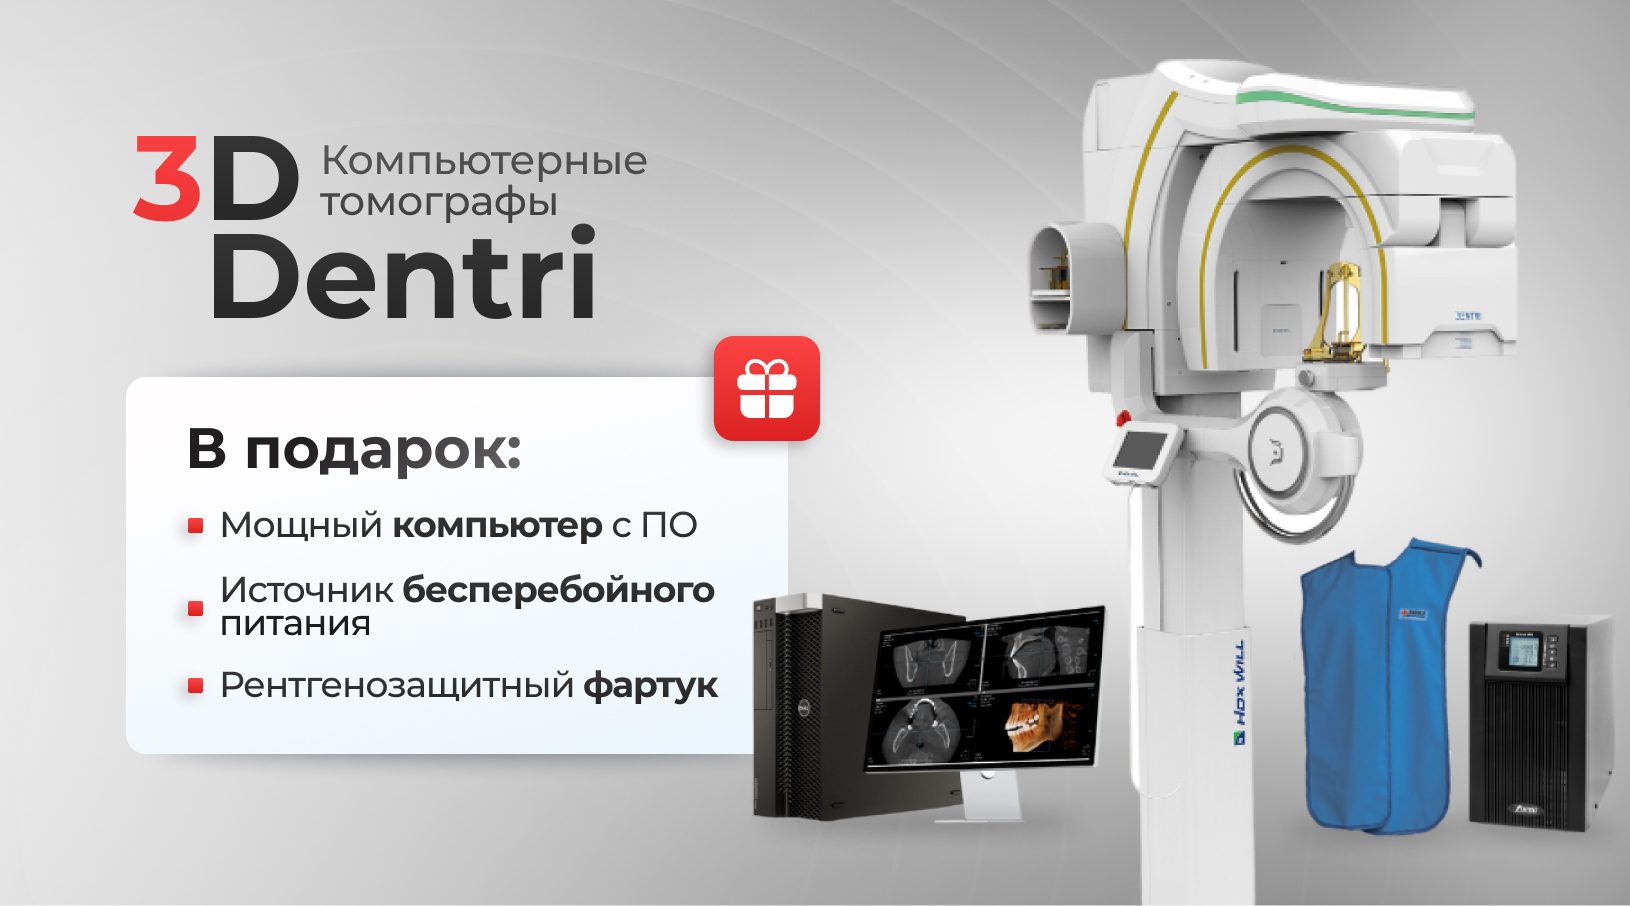 3D томографы Dentri в выгодной комплектации!